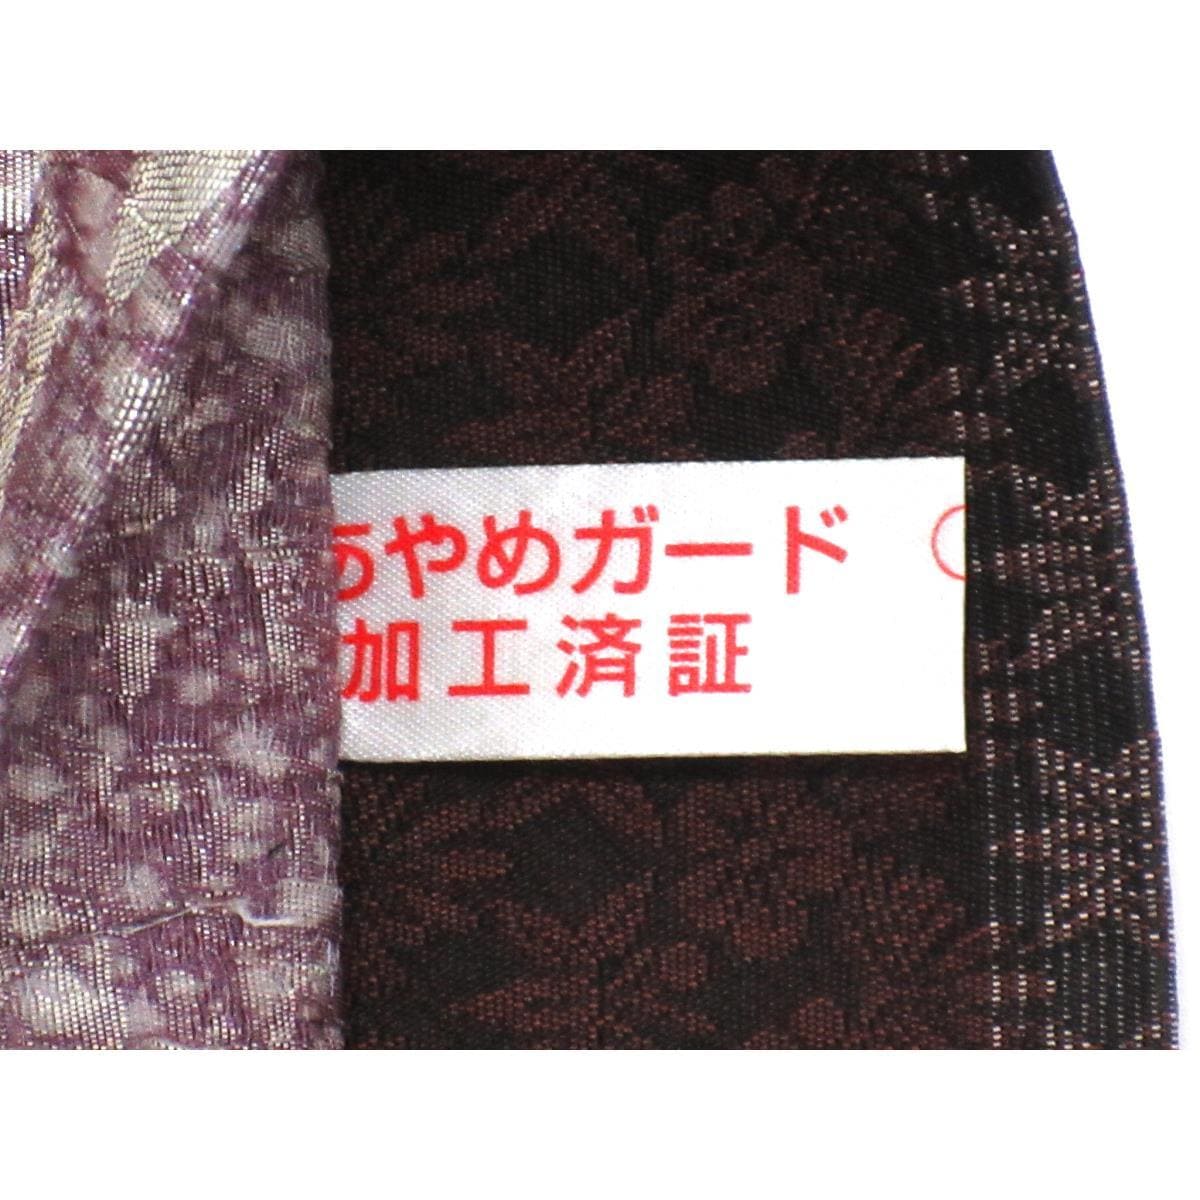 [Unused items] Fukuro obi Fukureori pattern